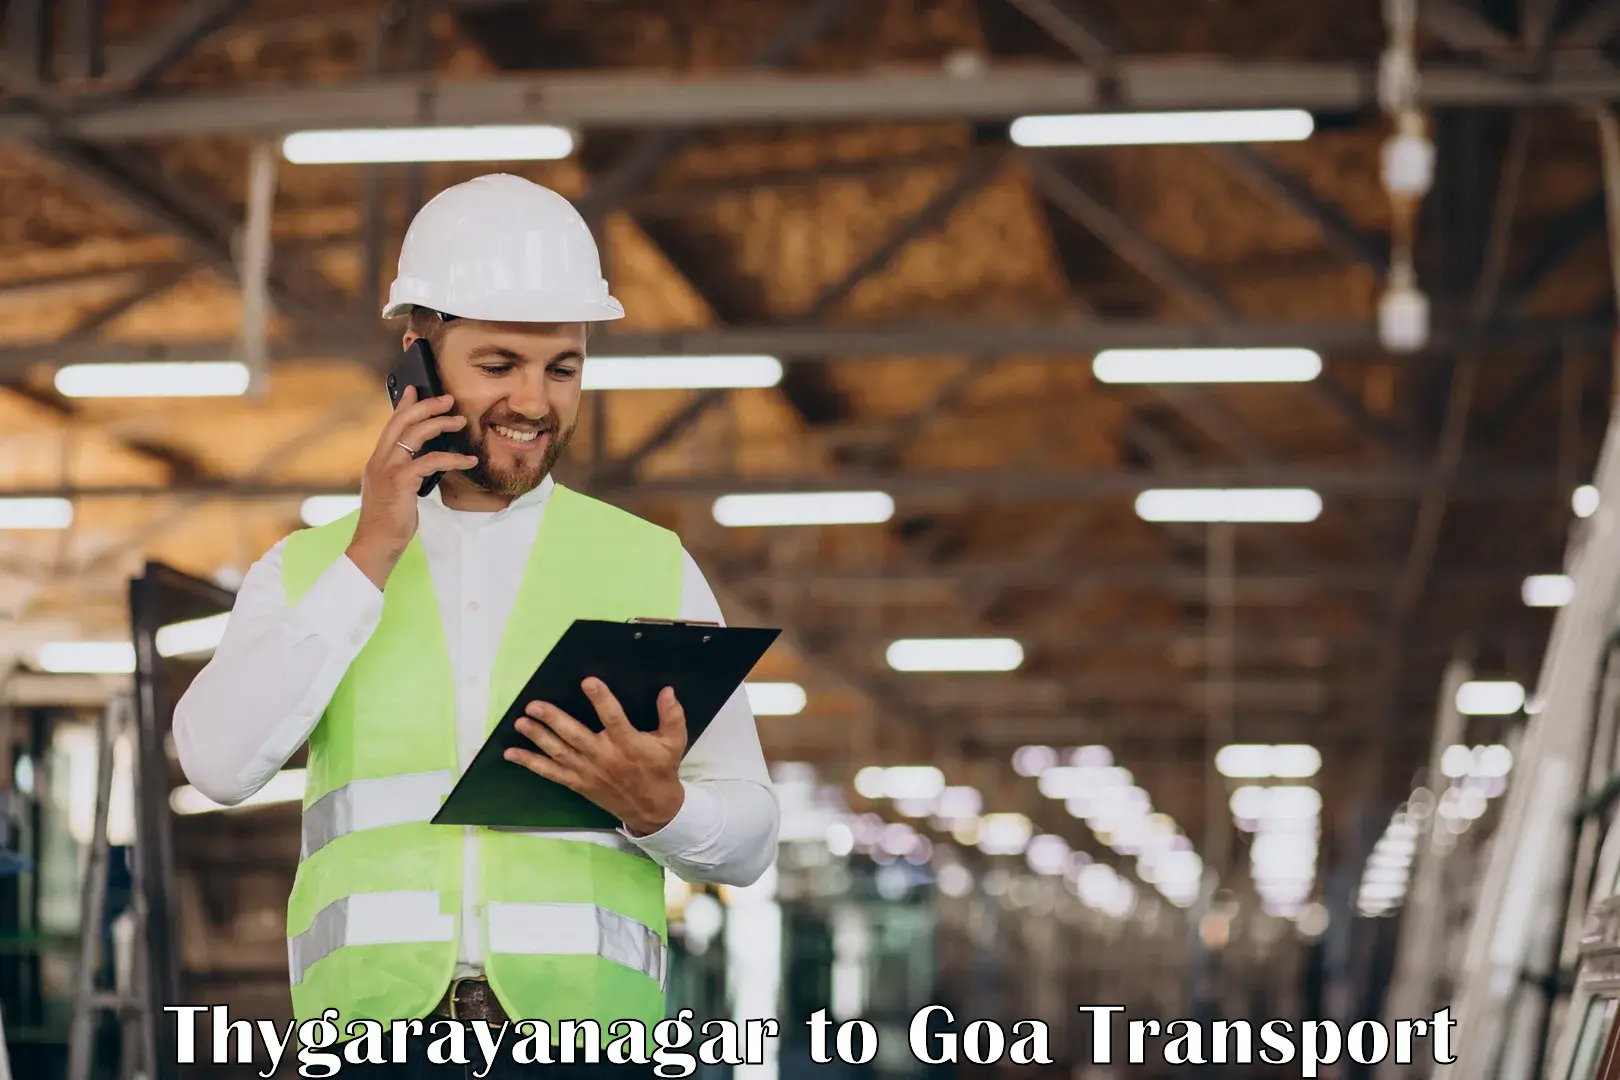 Road transport online services Thygarayanagar to Vasco da Gama